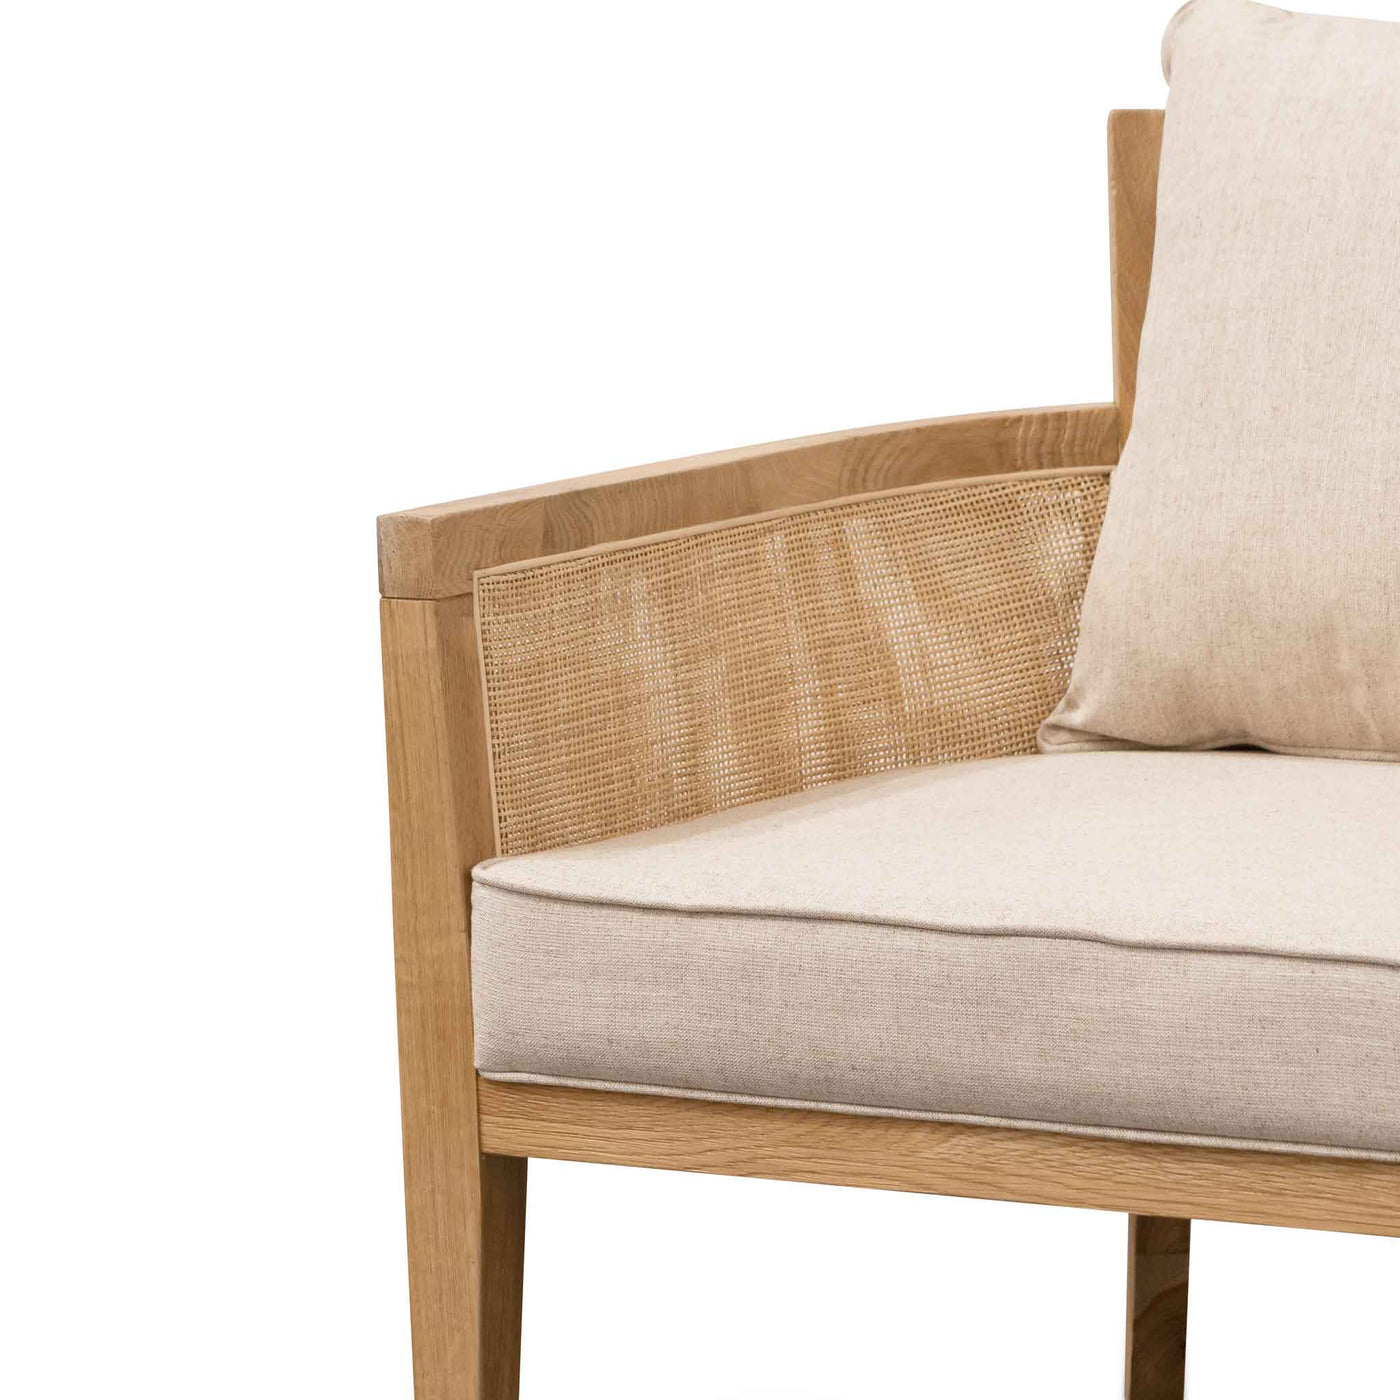 Rattan Sand White Cushions Armchair - Distress Natural